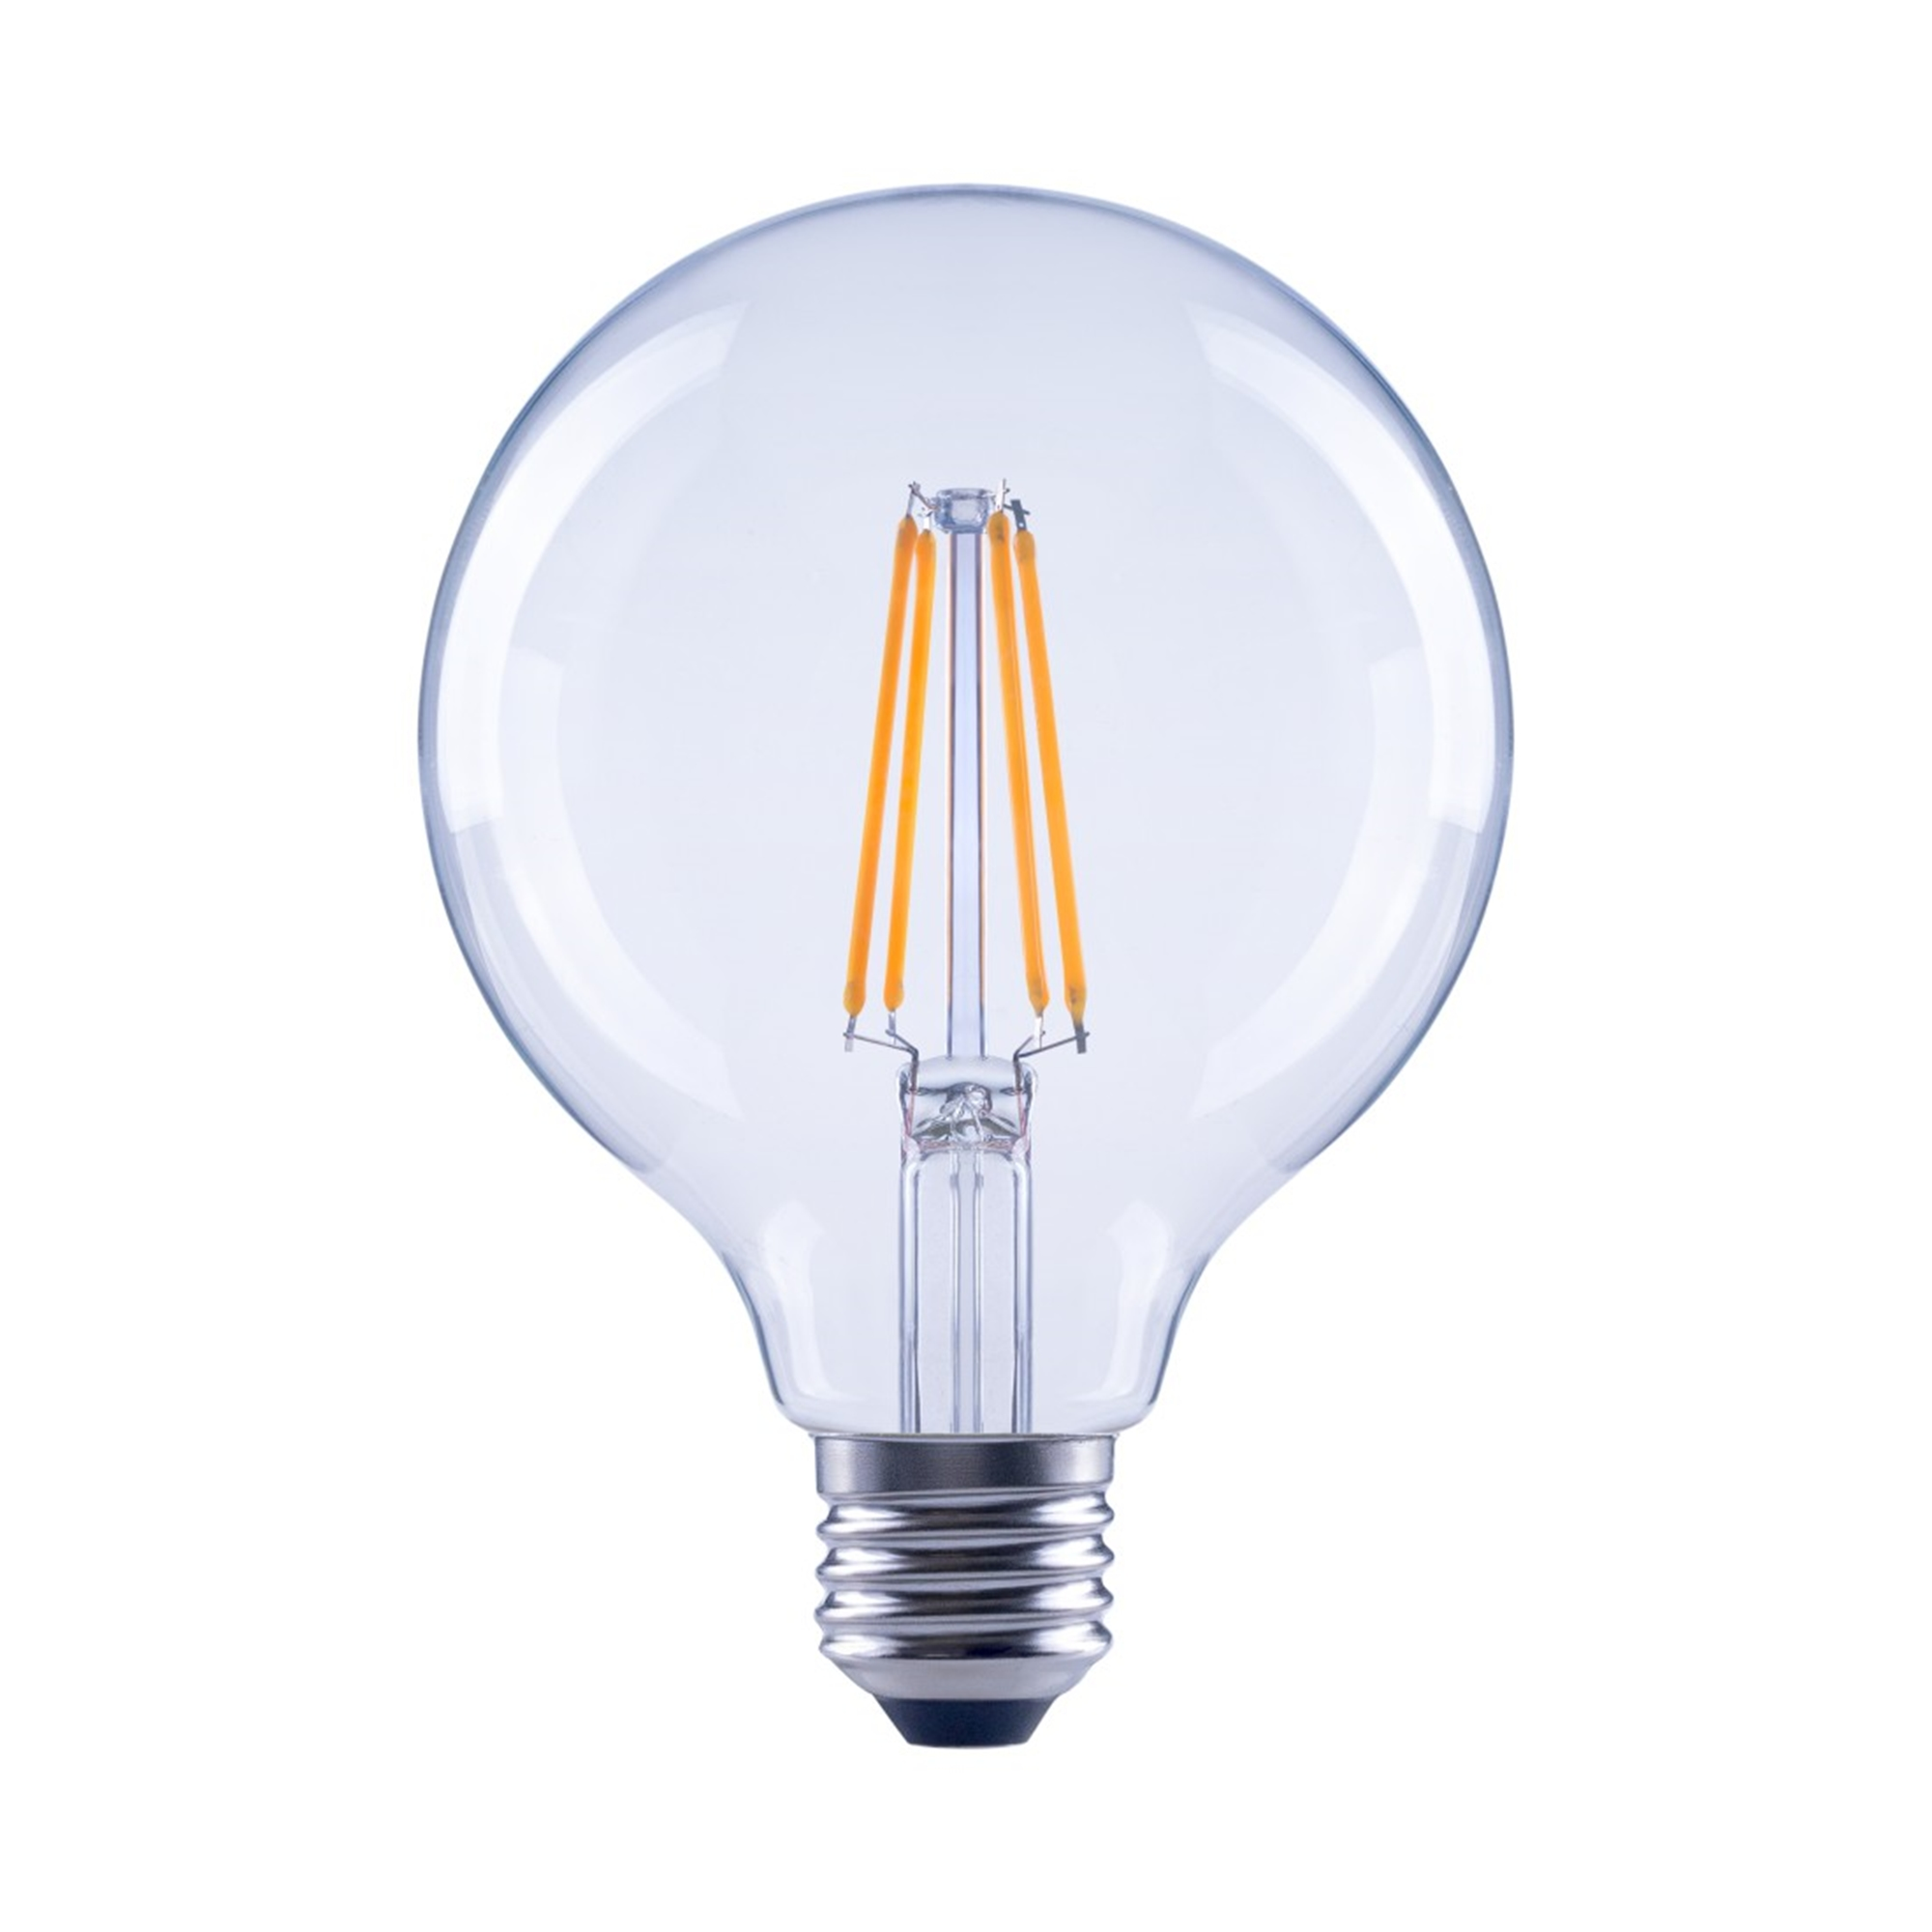 XAVAX E27, 806lm ersetzt 60W Warmweiß LED-Lampe E27